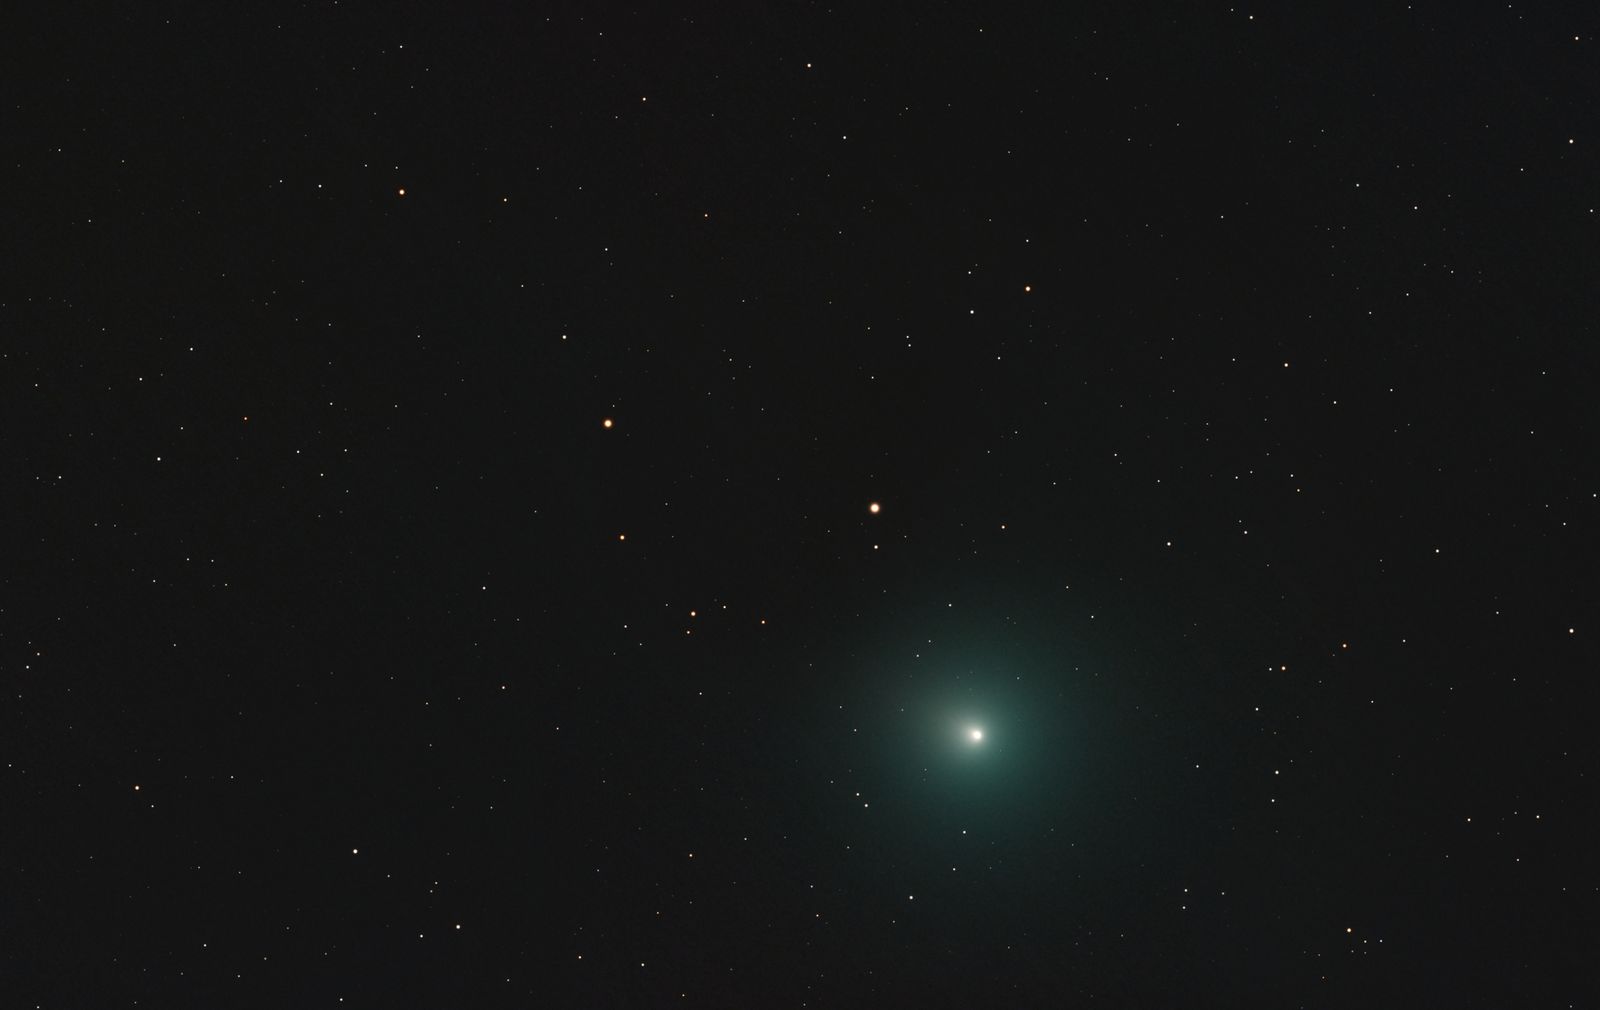 Comet 46P/Wirtanen - December 10, 2018